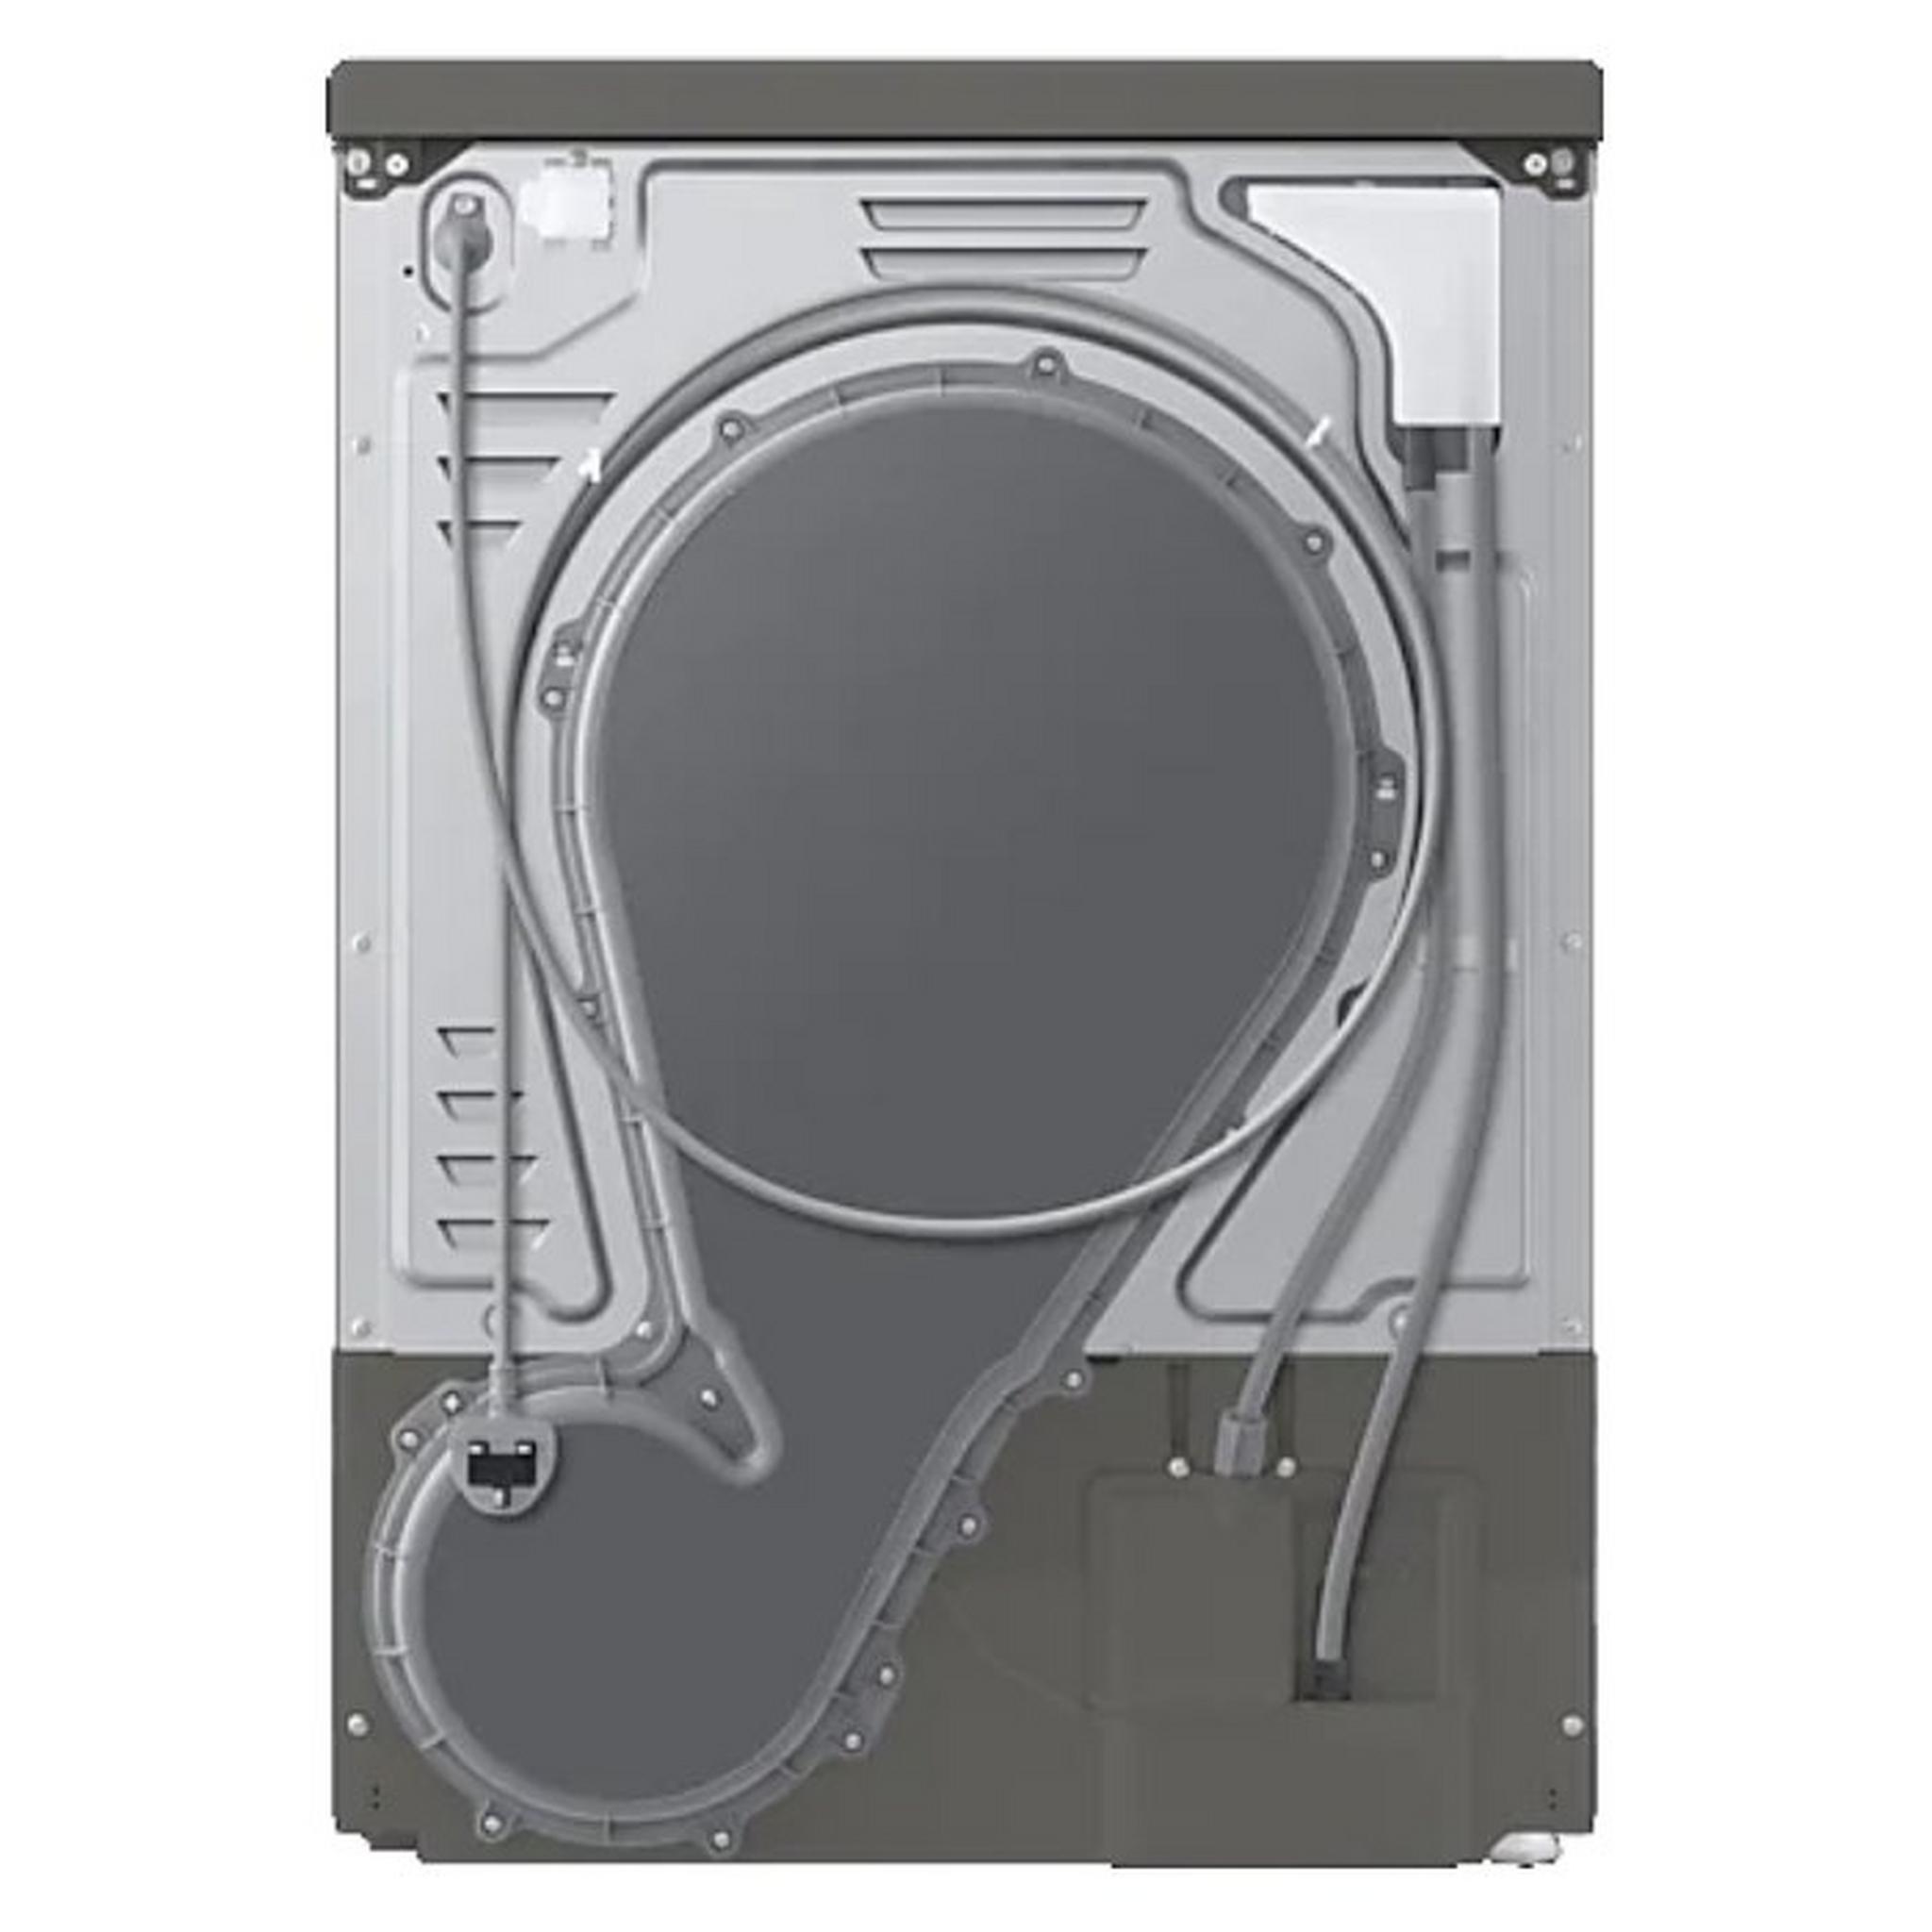 Samsung 8KG Condenser Dryer with Heat Pump (DV80T5220AX) - Silver